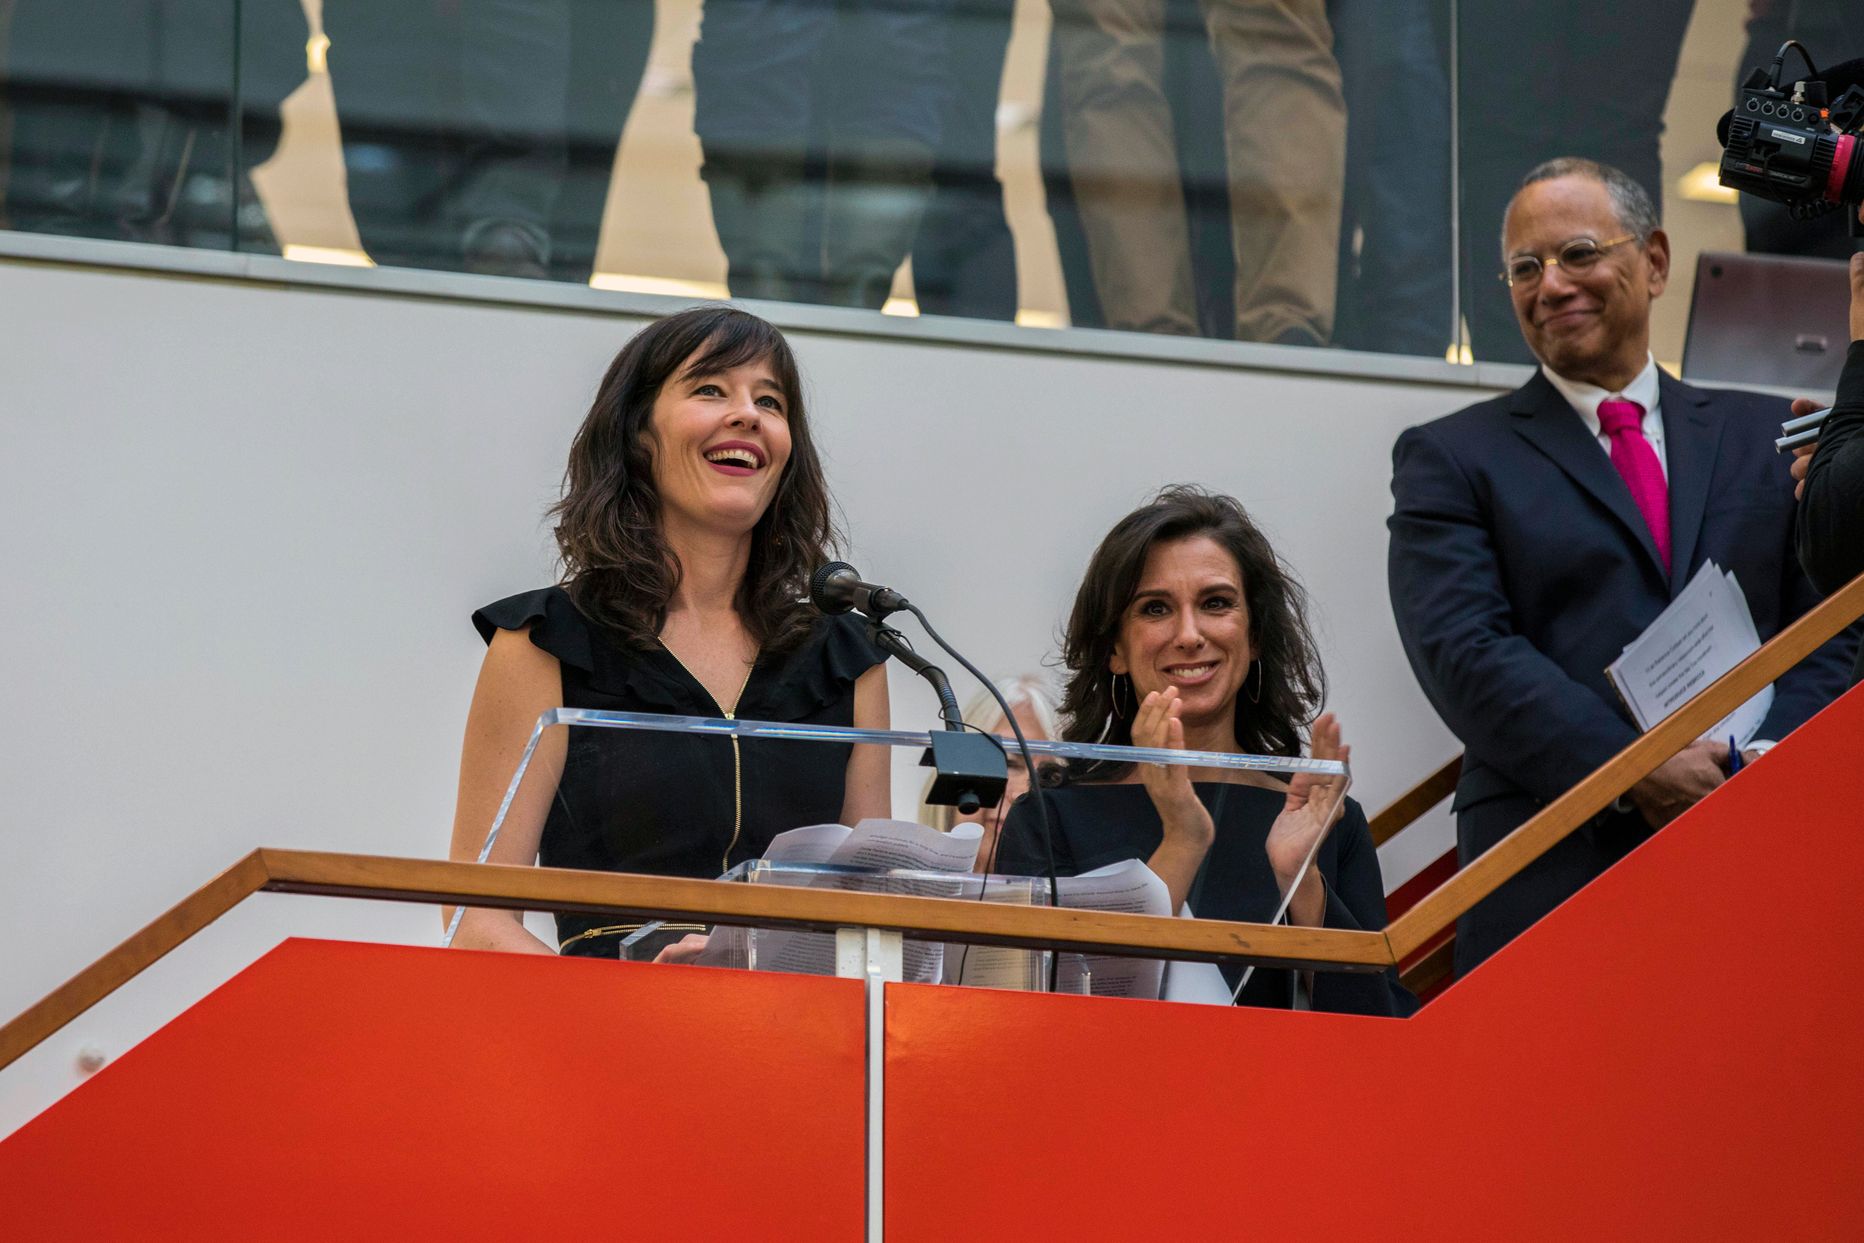 New York Timesi ajakirjanikud Megan Twohey (vasakul) ja Jodi Kantor pöördumas kolleegide poole pärast Pulitzeri preemia võitmist.